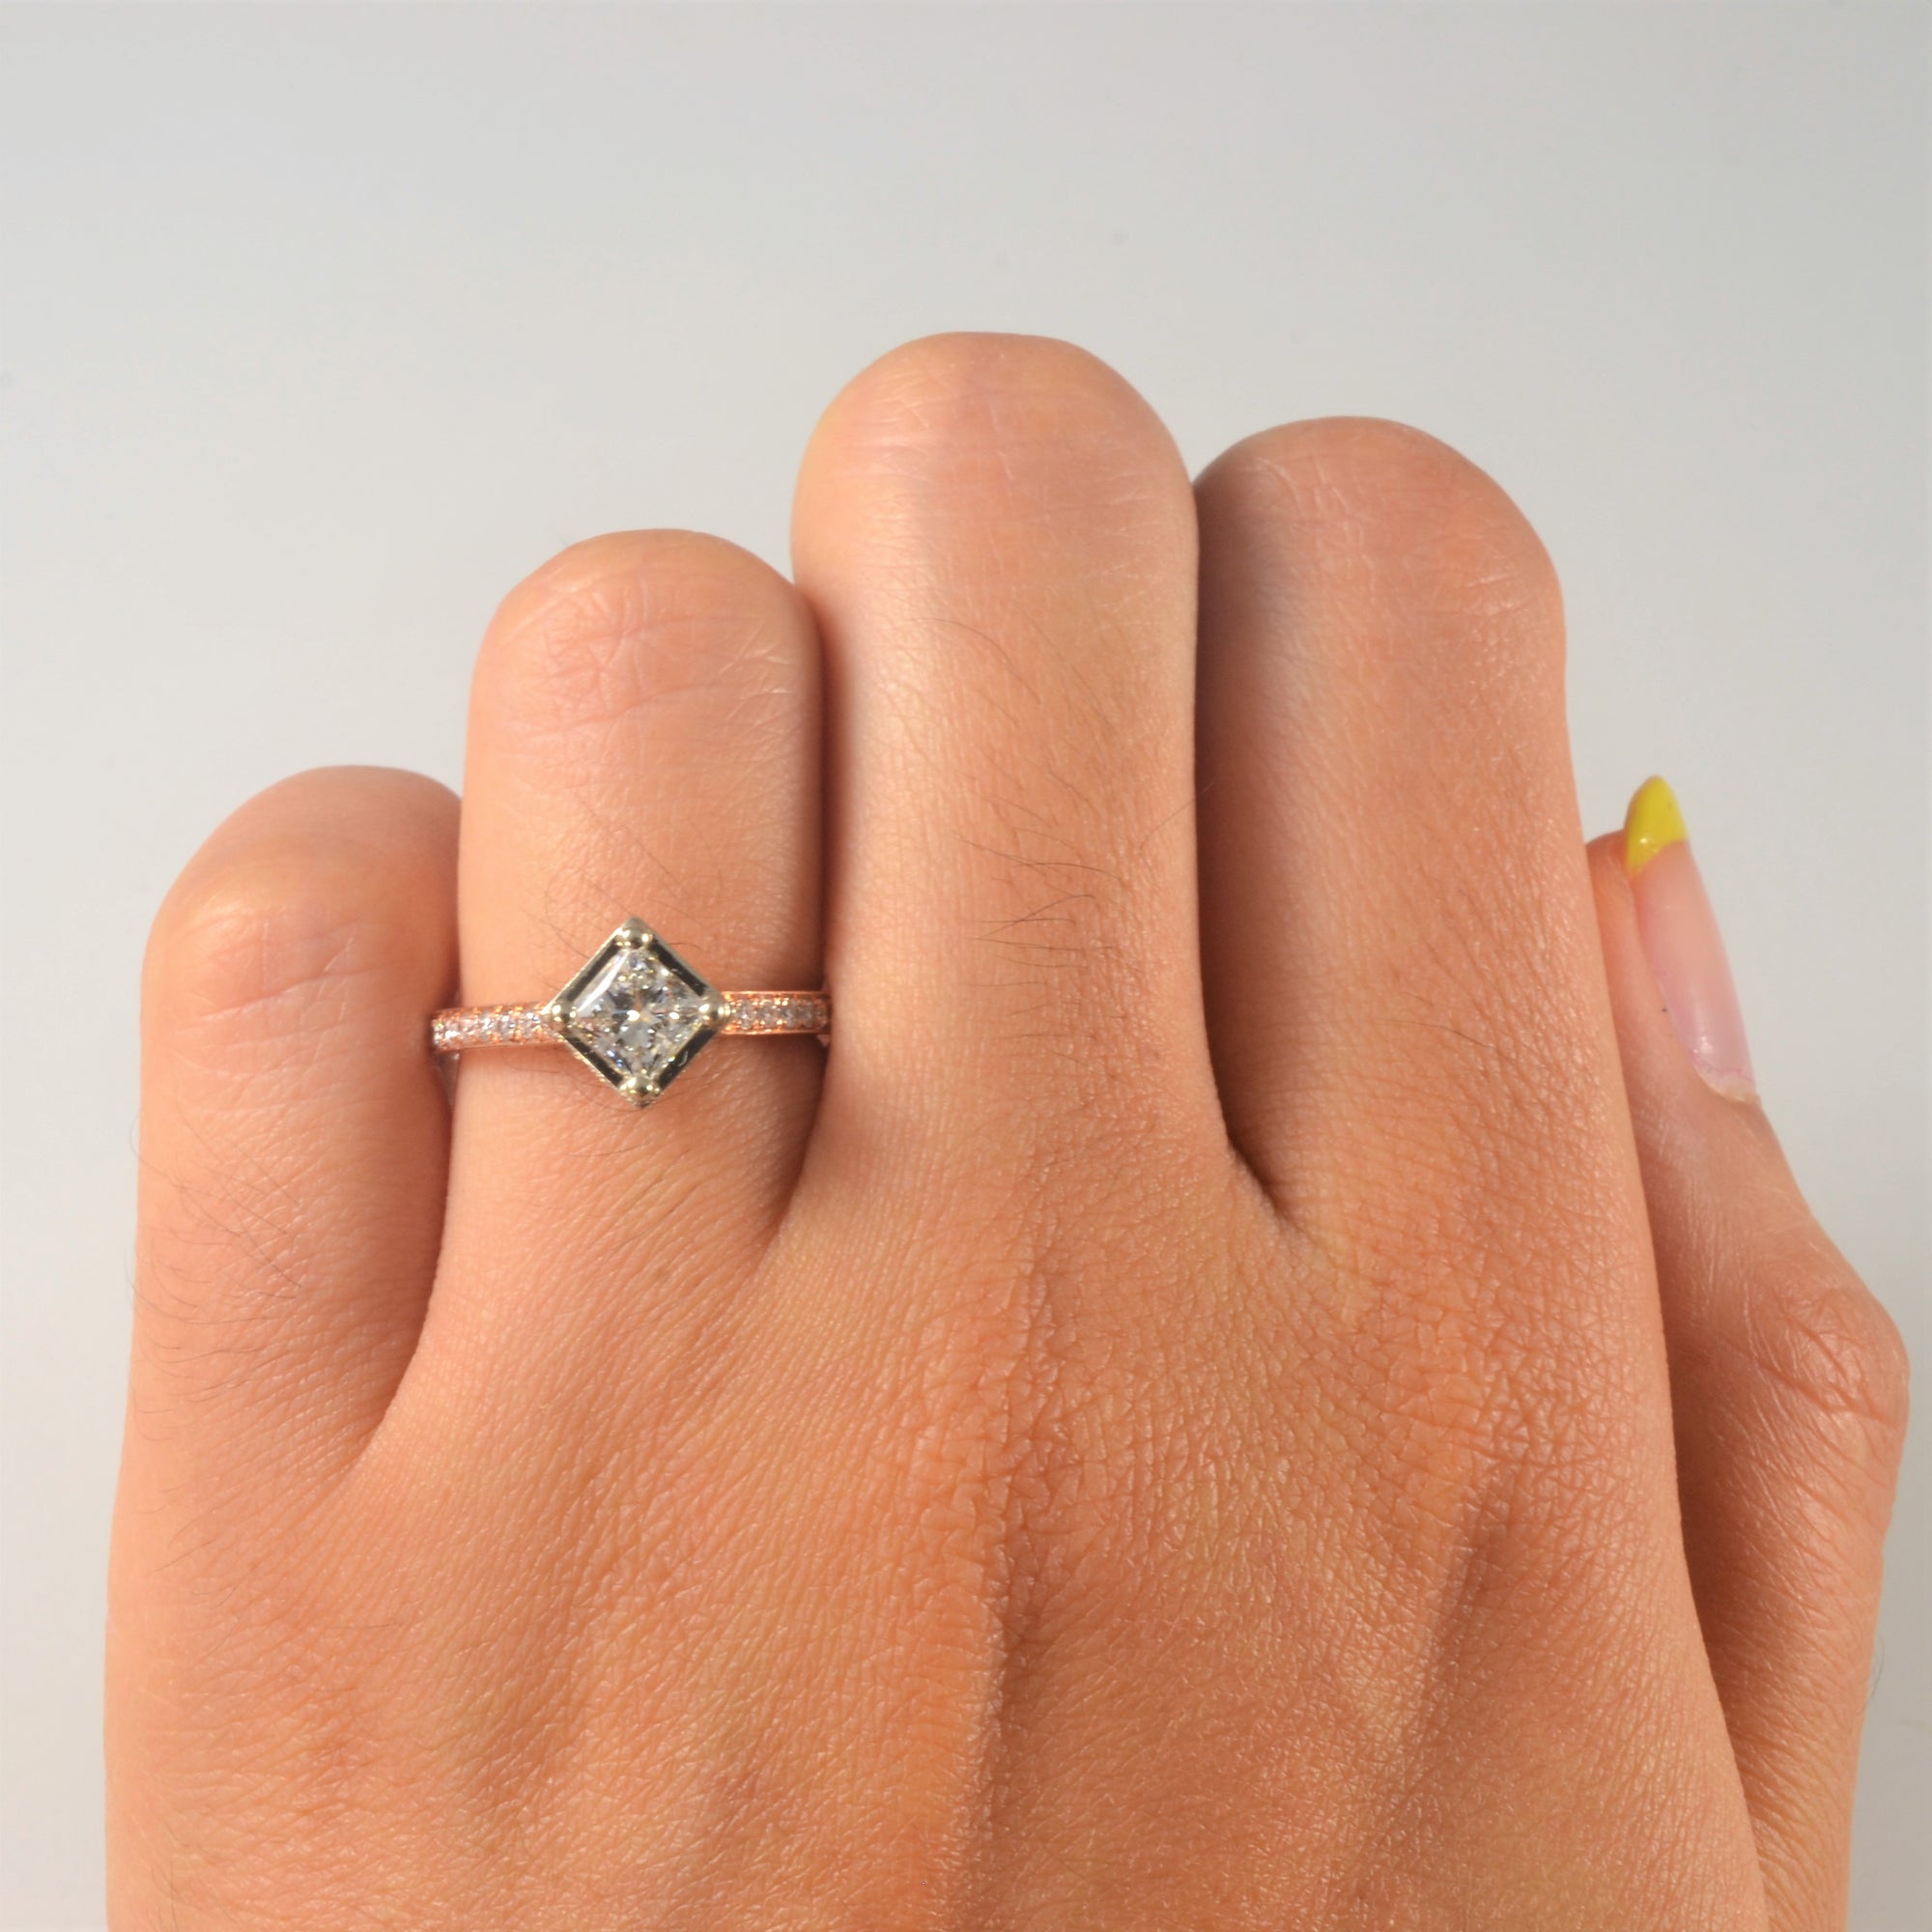 'Noam Carver' East West Princess Diamond Engagement Ring | 0.94ctw | SZ 4.75 |